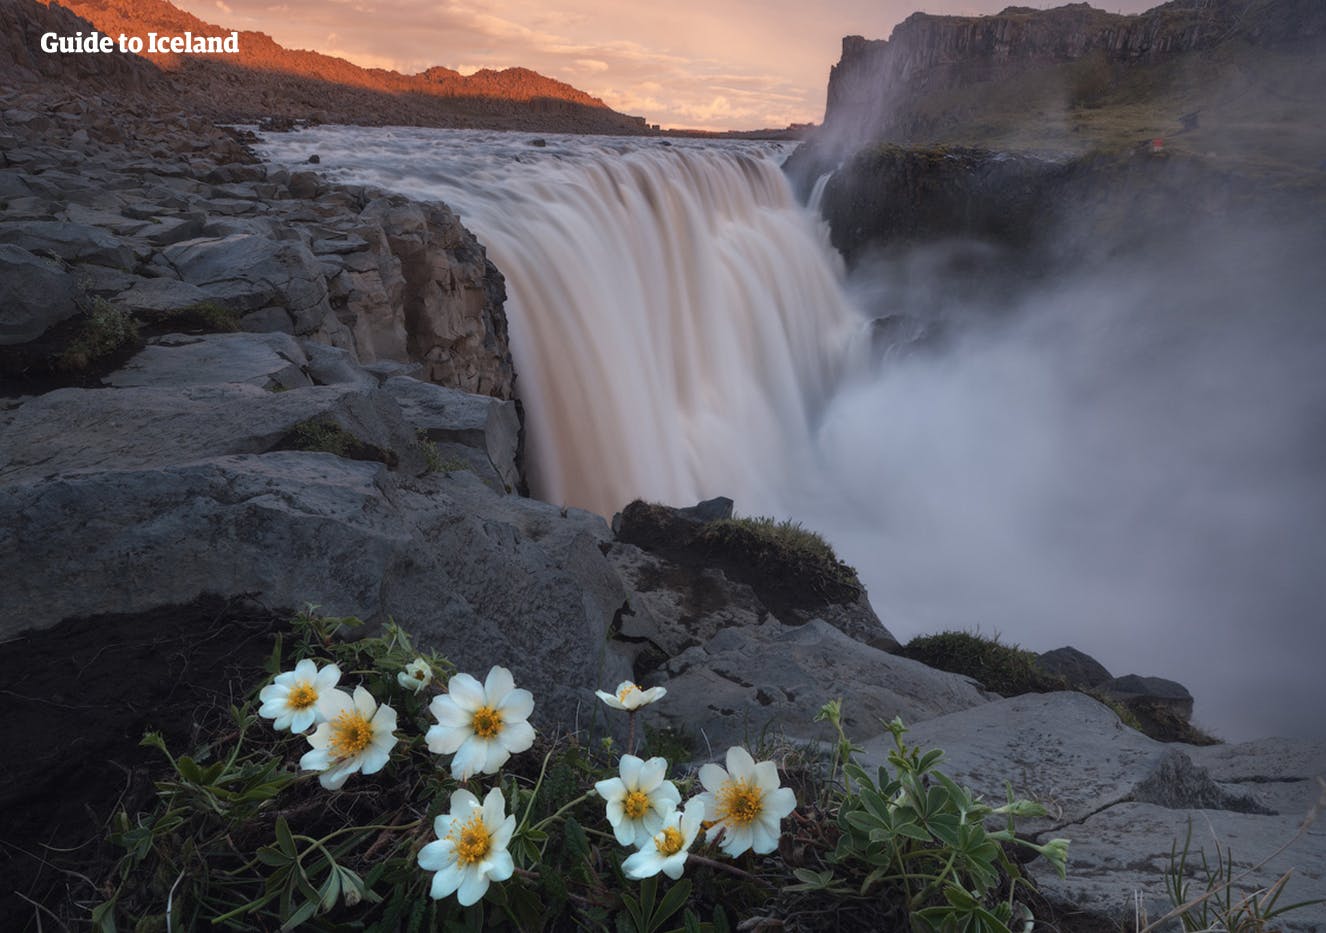 Dettifoss to najpotężniejszy wodospad na Islandii.